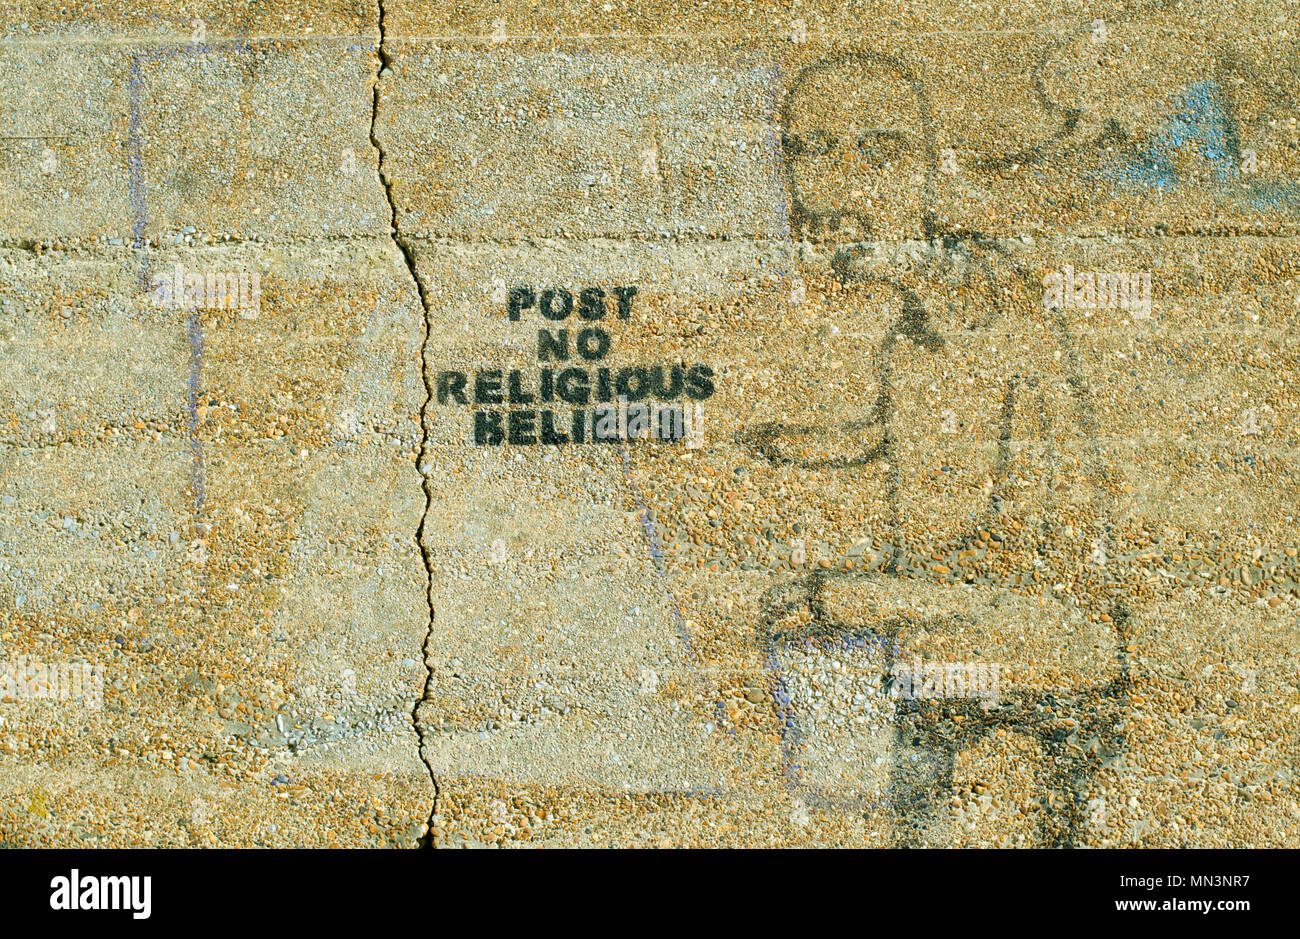 " POST N. credenze religiose' - Graffiti su un ciottolo-tratteggiato sea wall a Shoreham Porto, vicino a Brighton, Sussex. Inghilterra 2008. Foto Stock